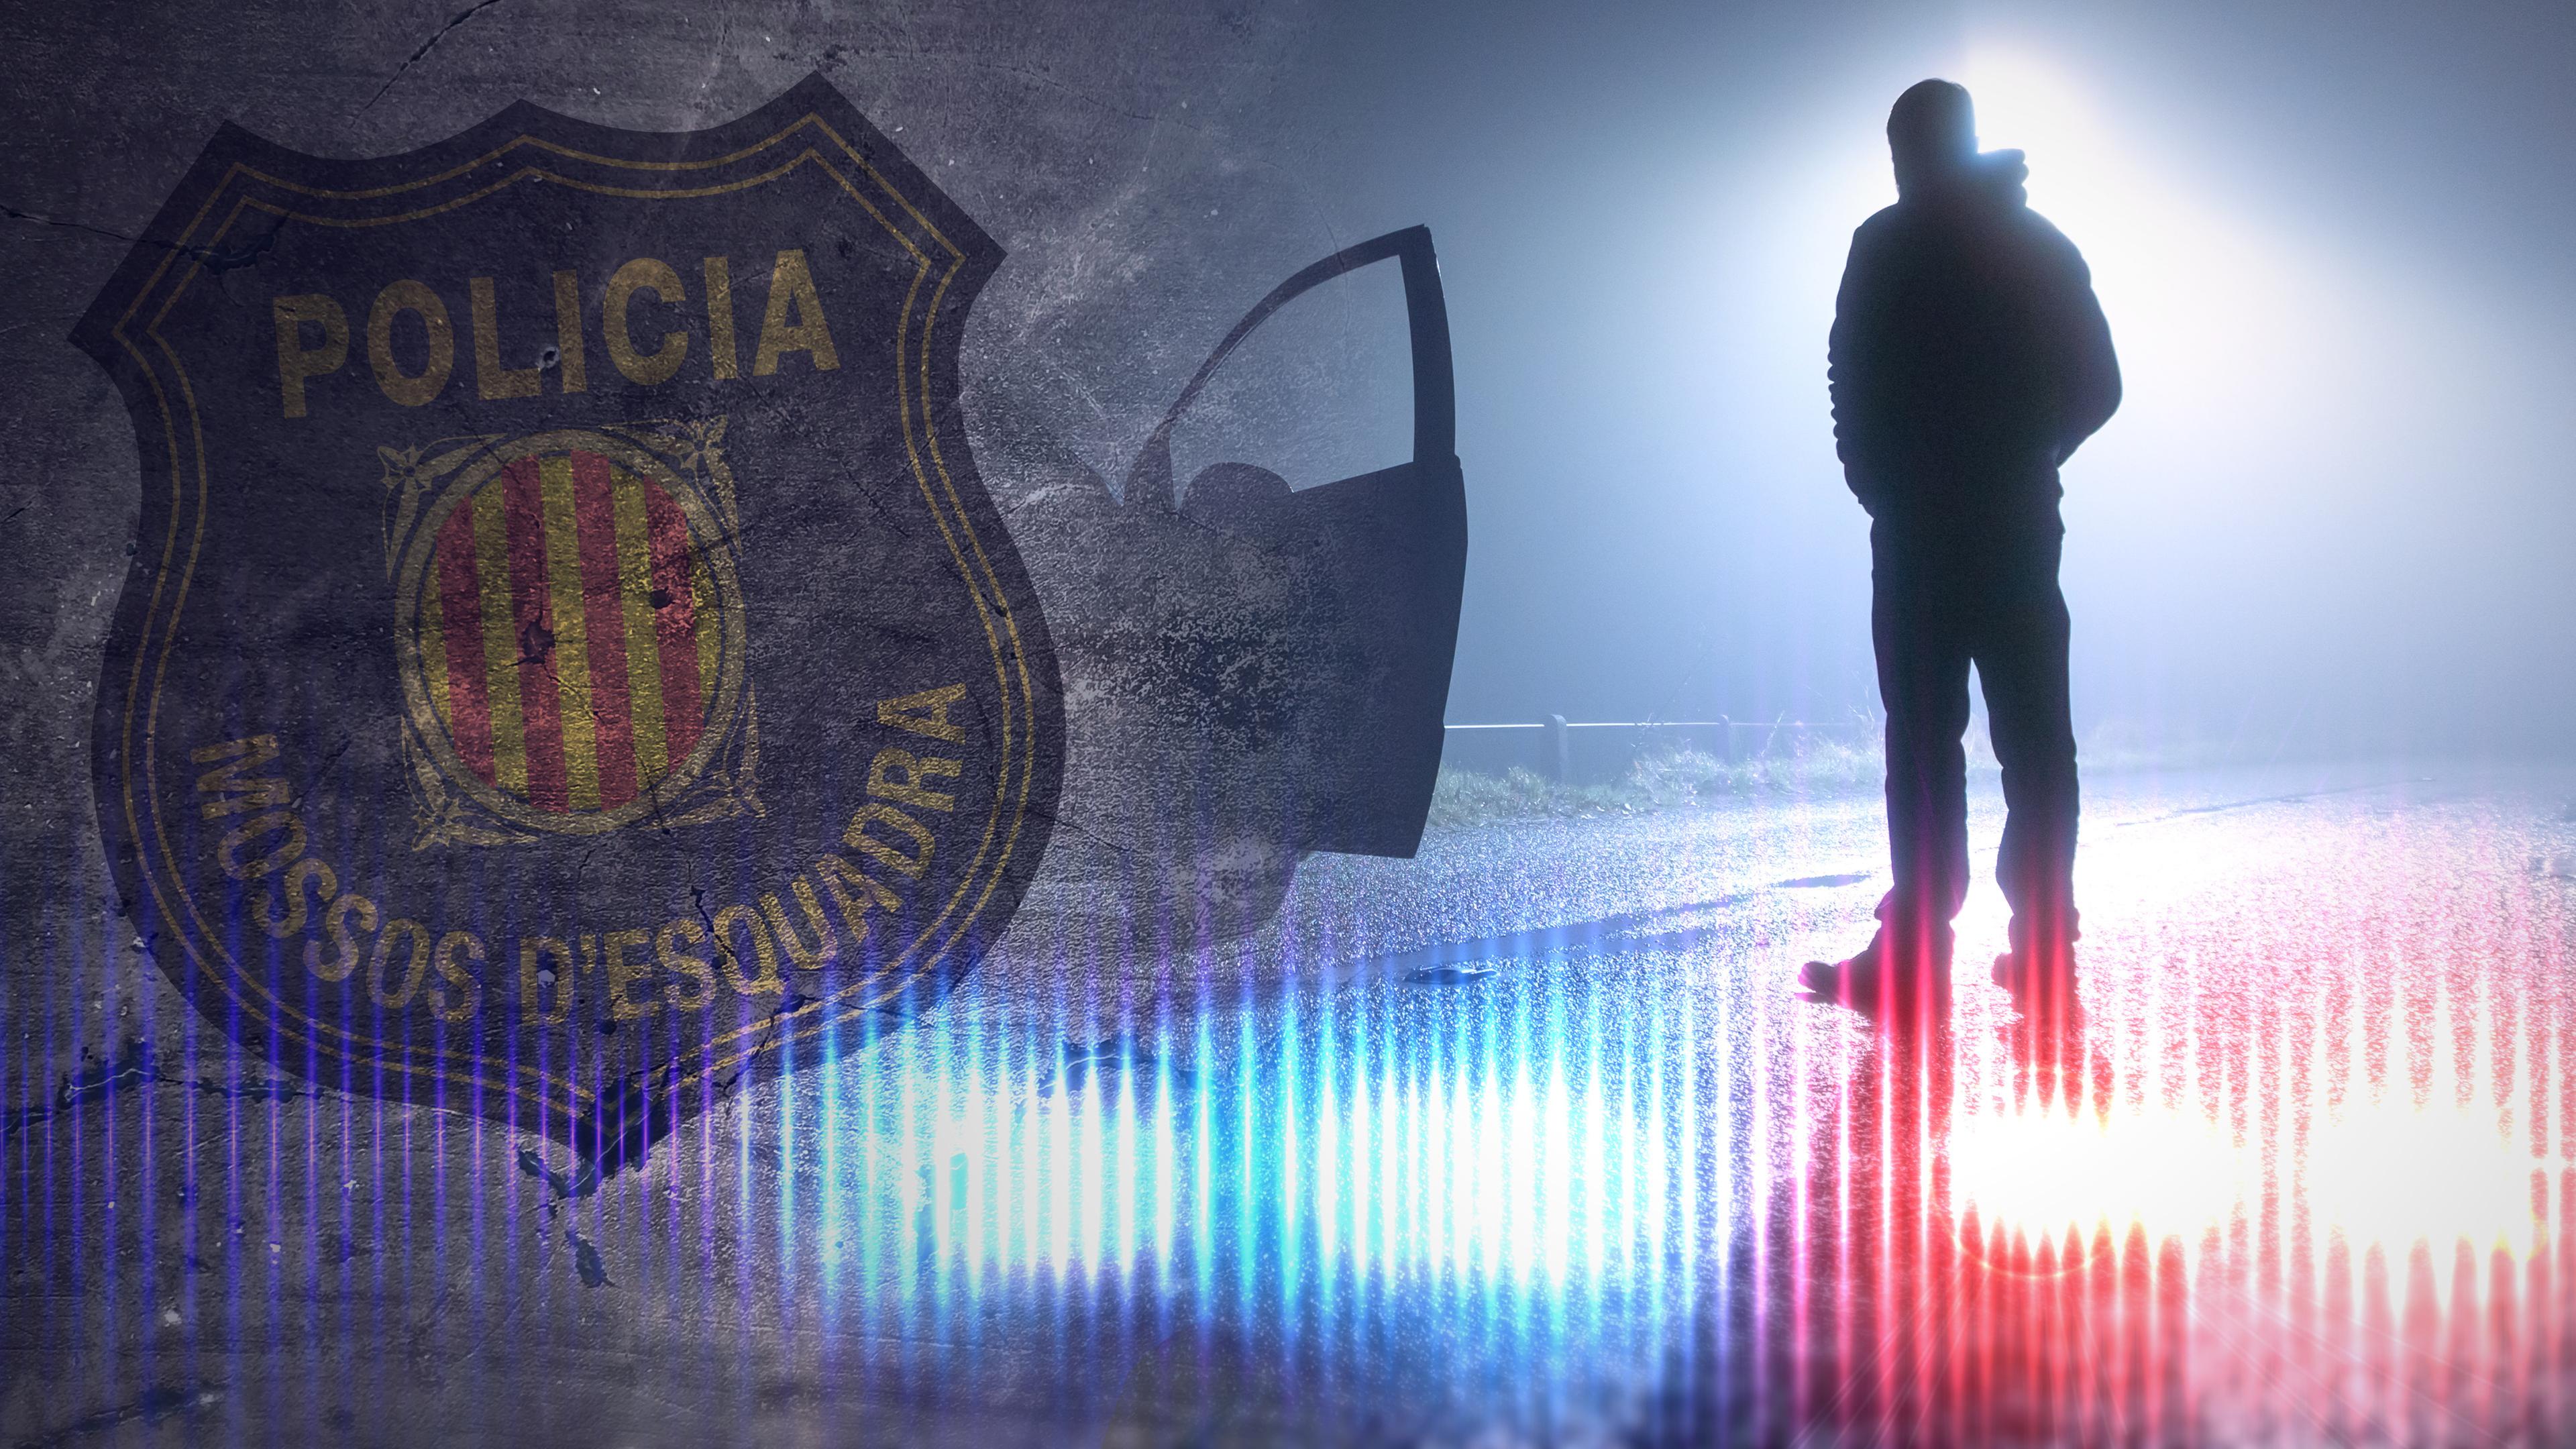 Montage: Das Wappen der katalanischen Polizei Mossos d'Esquadra, daneben ein Mann, der nachts neben seinem offenen Fahrzeug auf der Landstraße steht.